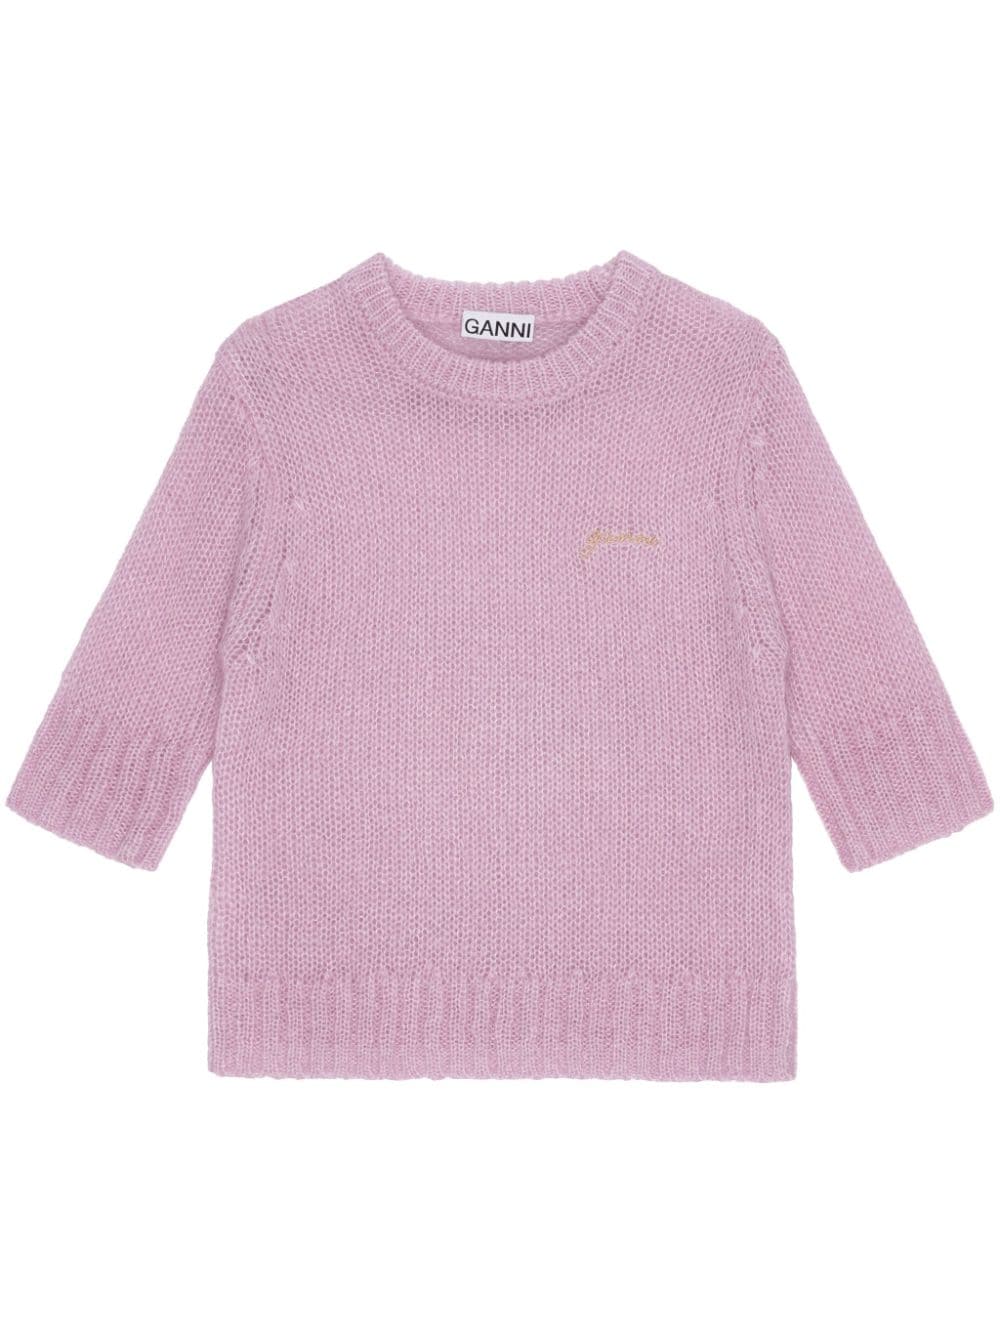 GANNI logo-embroidered knitted top - Pink von GANNI